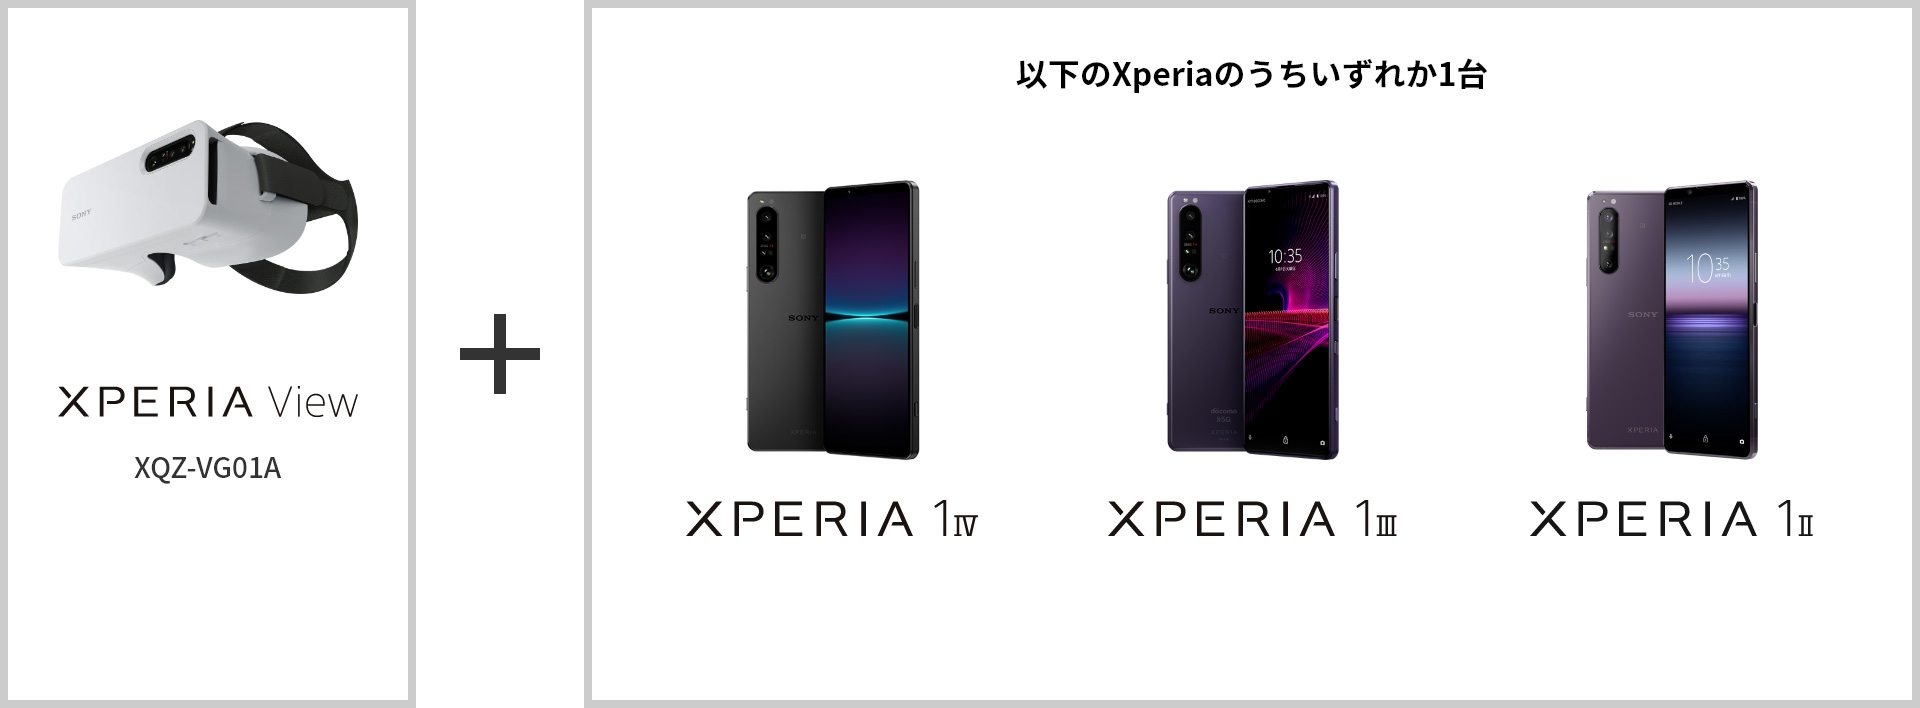 Xperia View(XQZ-VG01A) + 以下のXperiaのうちいずれか1台 Xperia 1 IV / Xperia 1 III / Xperia 1 II